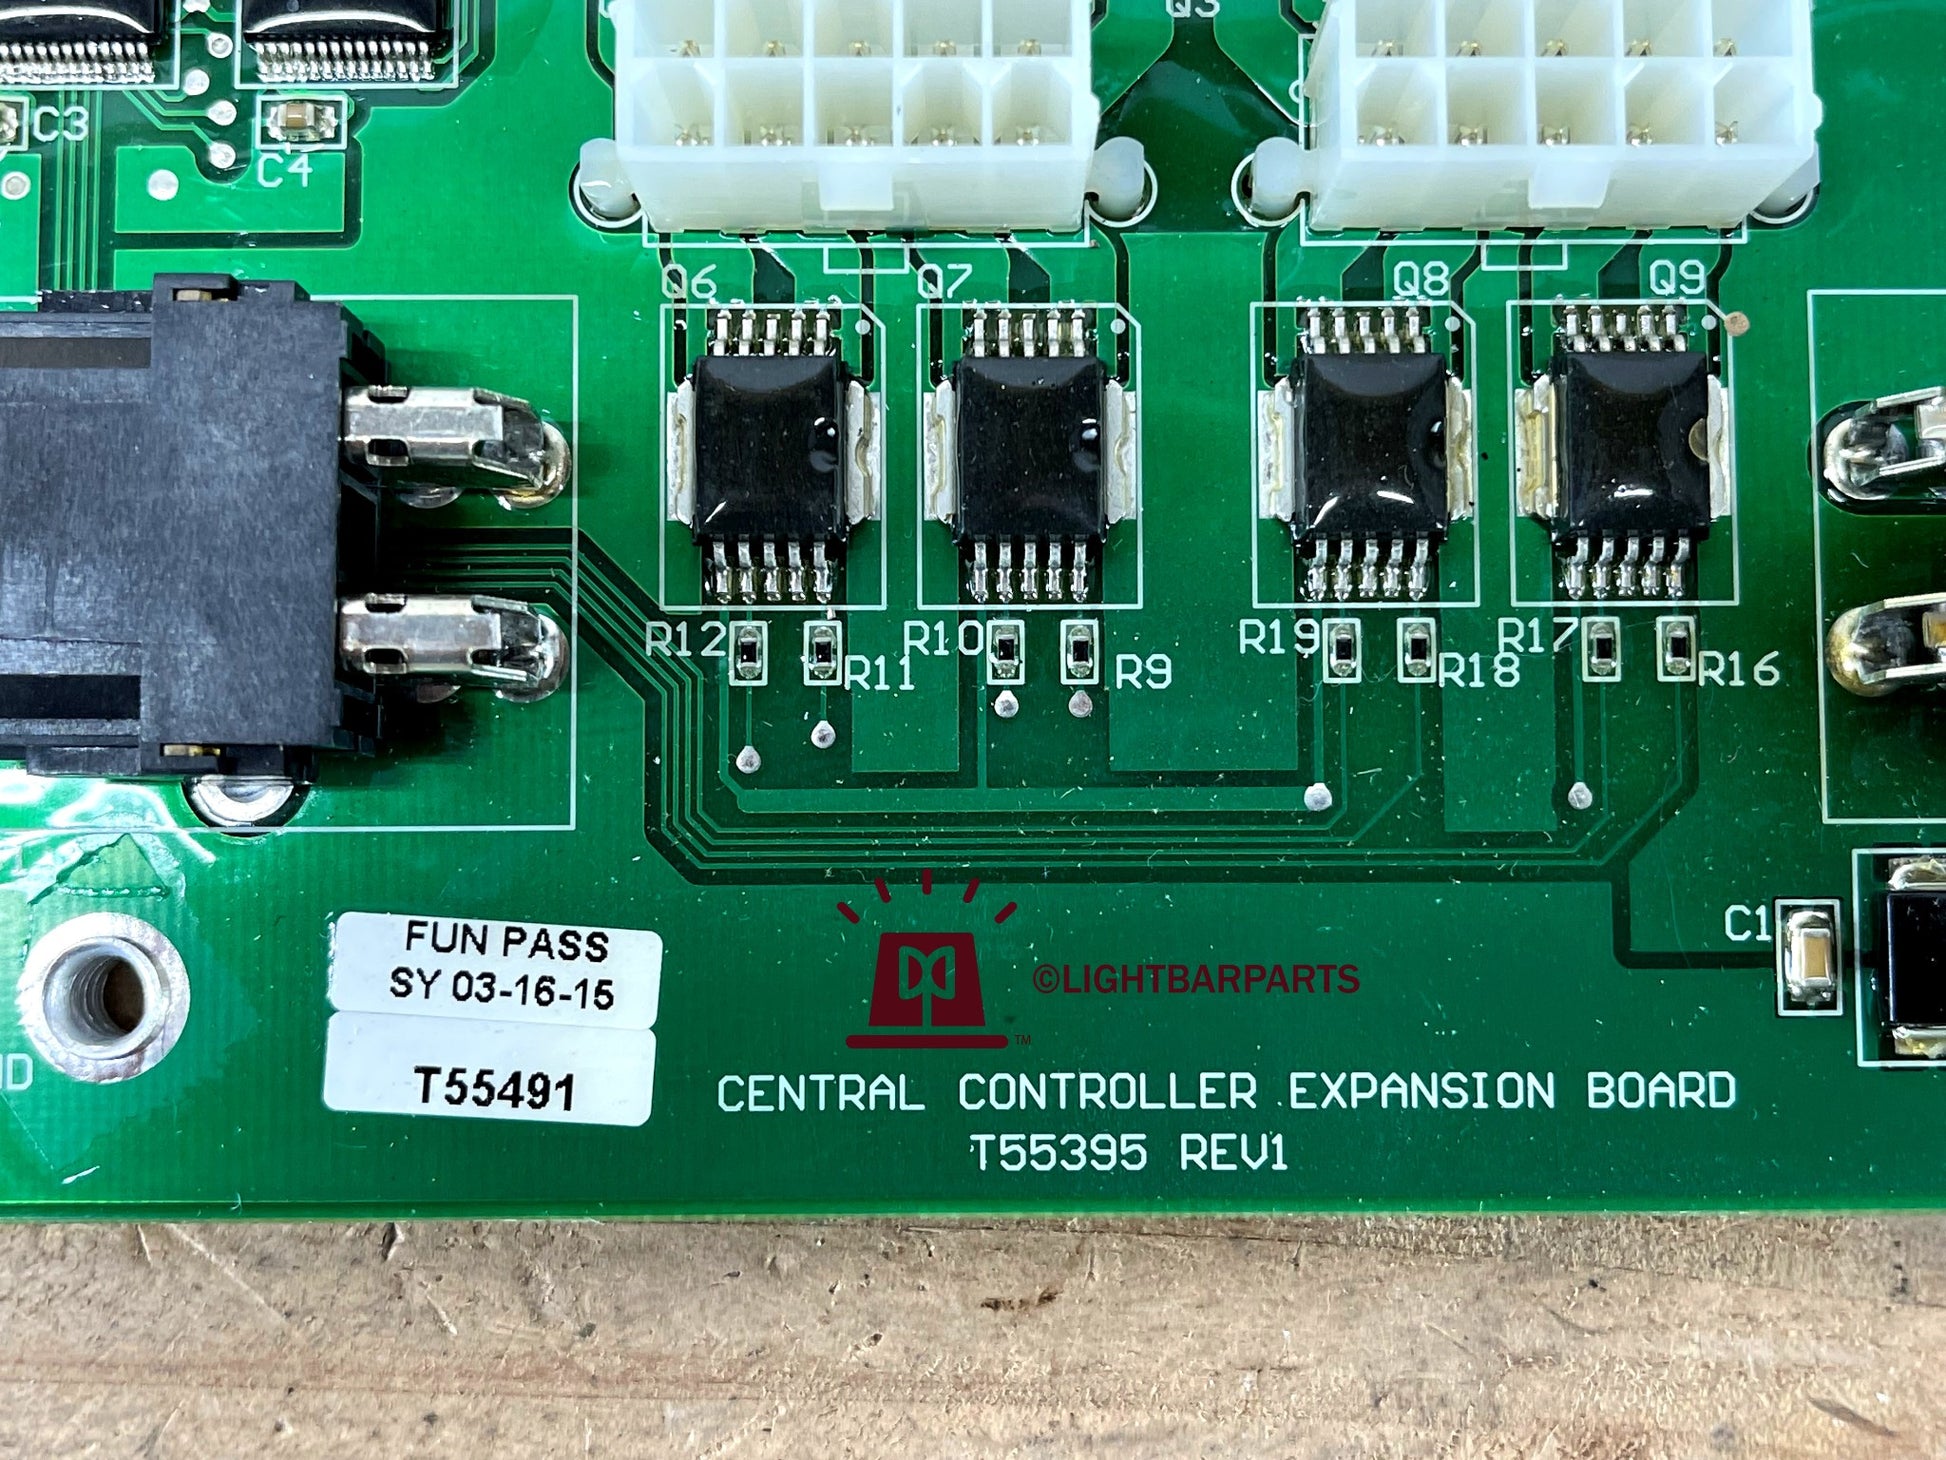 Code 3 Defender Lightbar - Central Controller Expansion Board